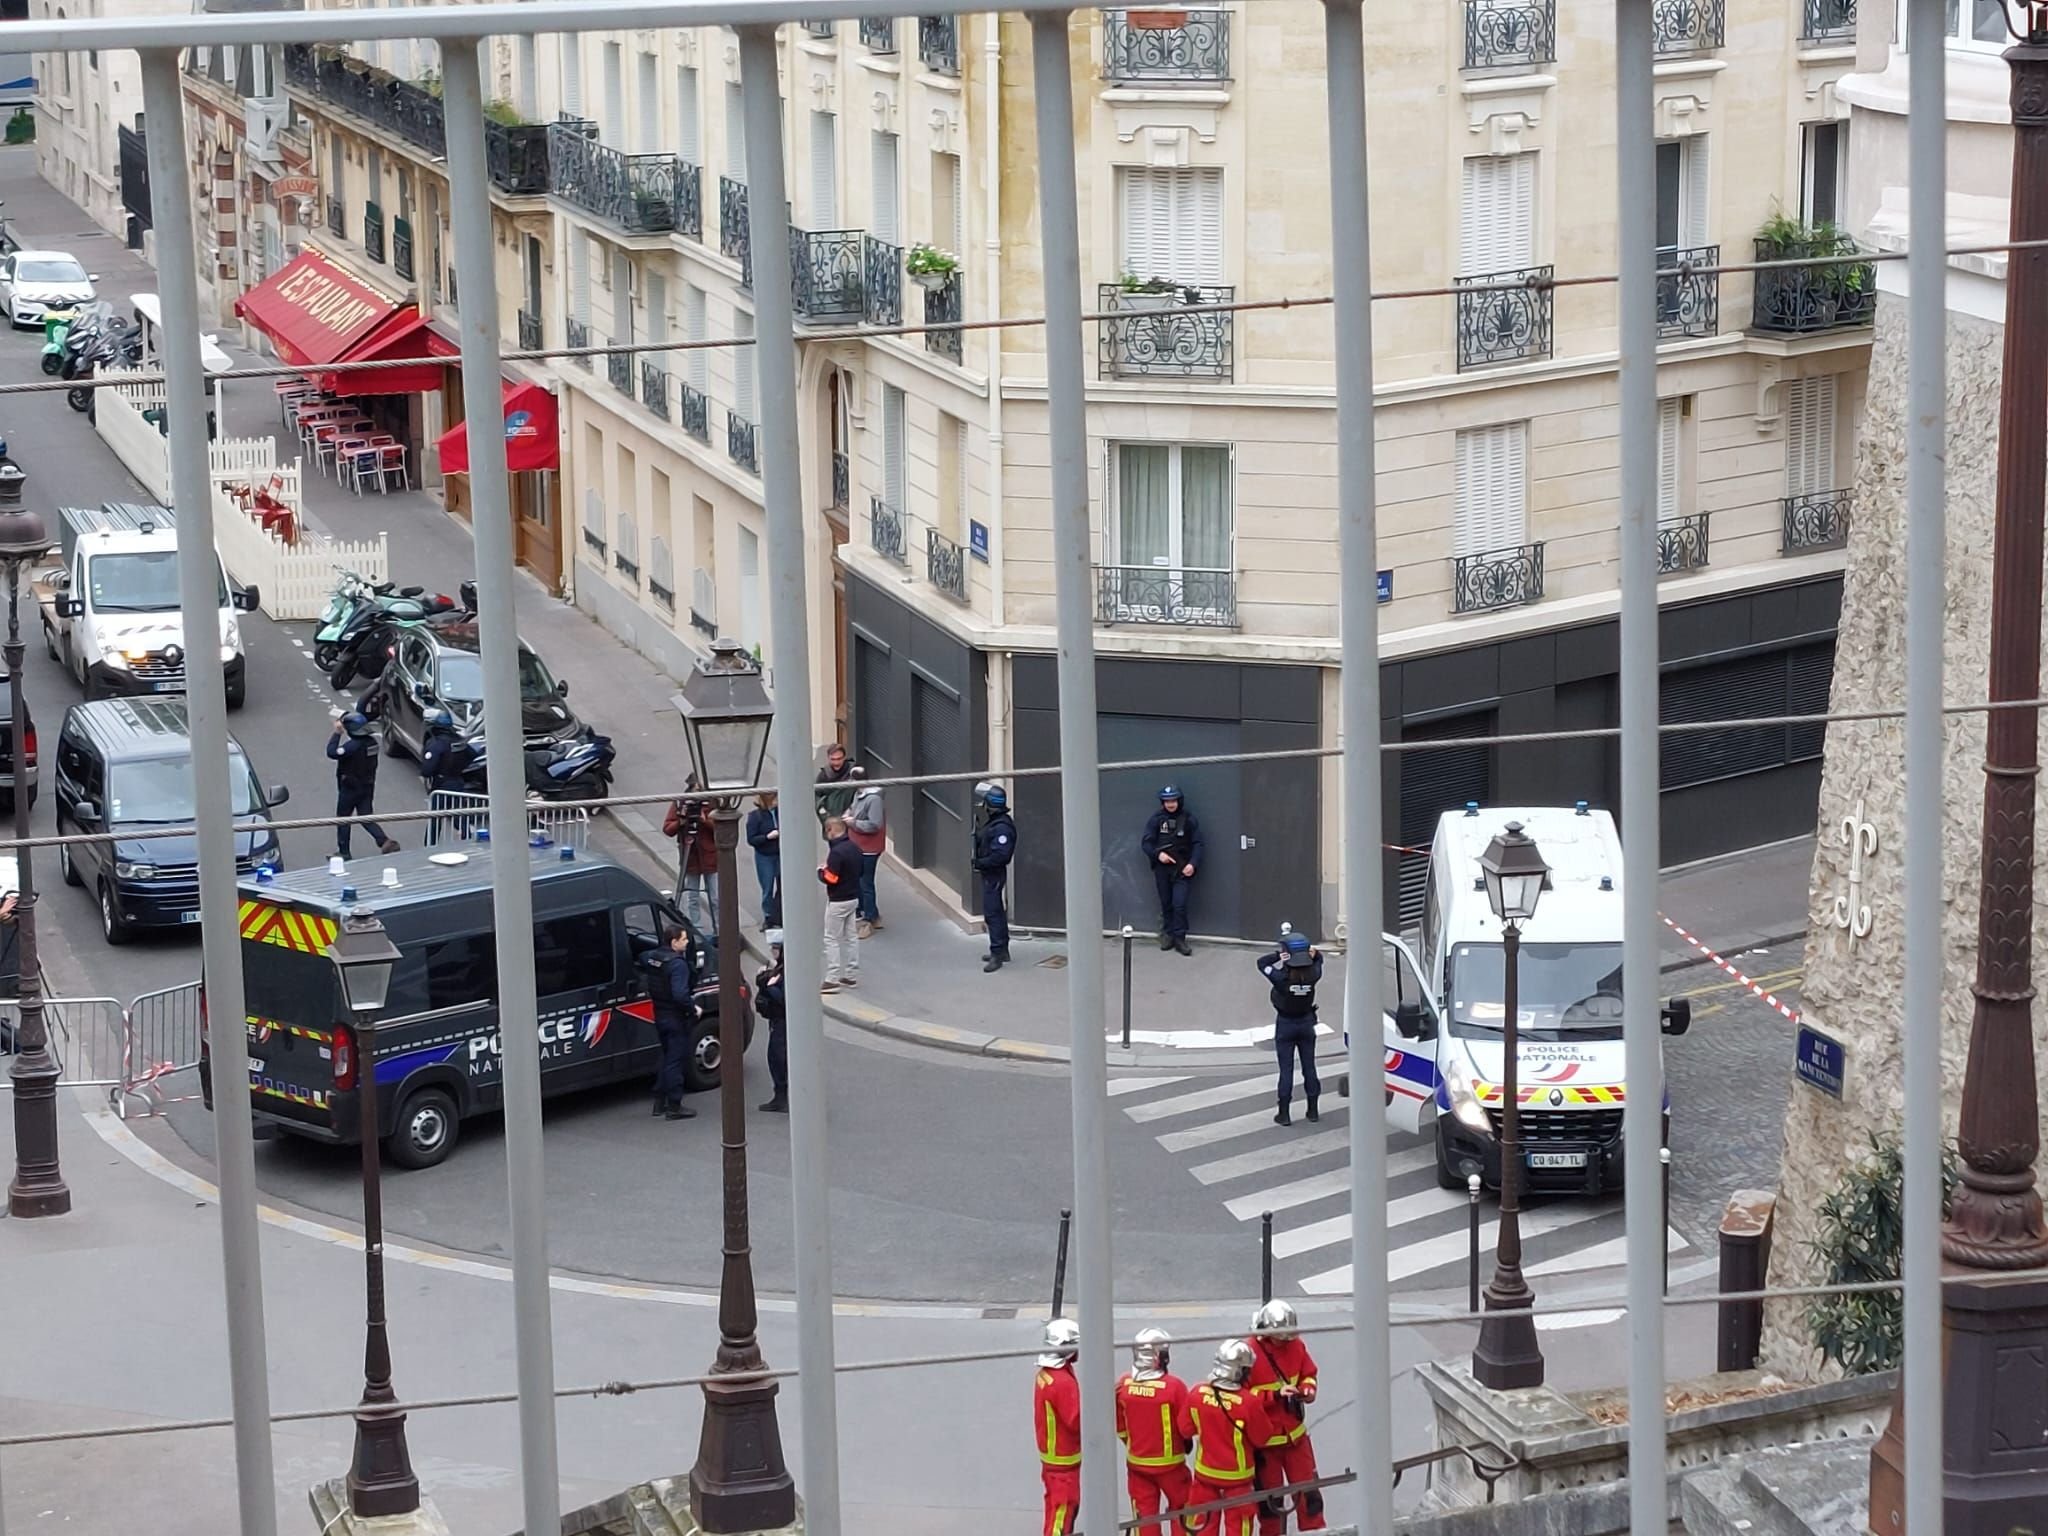 Le secteur du consulat d'Iran, dans le XVIe arrondissement de Paris, est bouclé ce vendredi après-midi. LP/Carole Sterlé